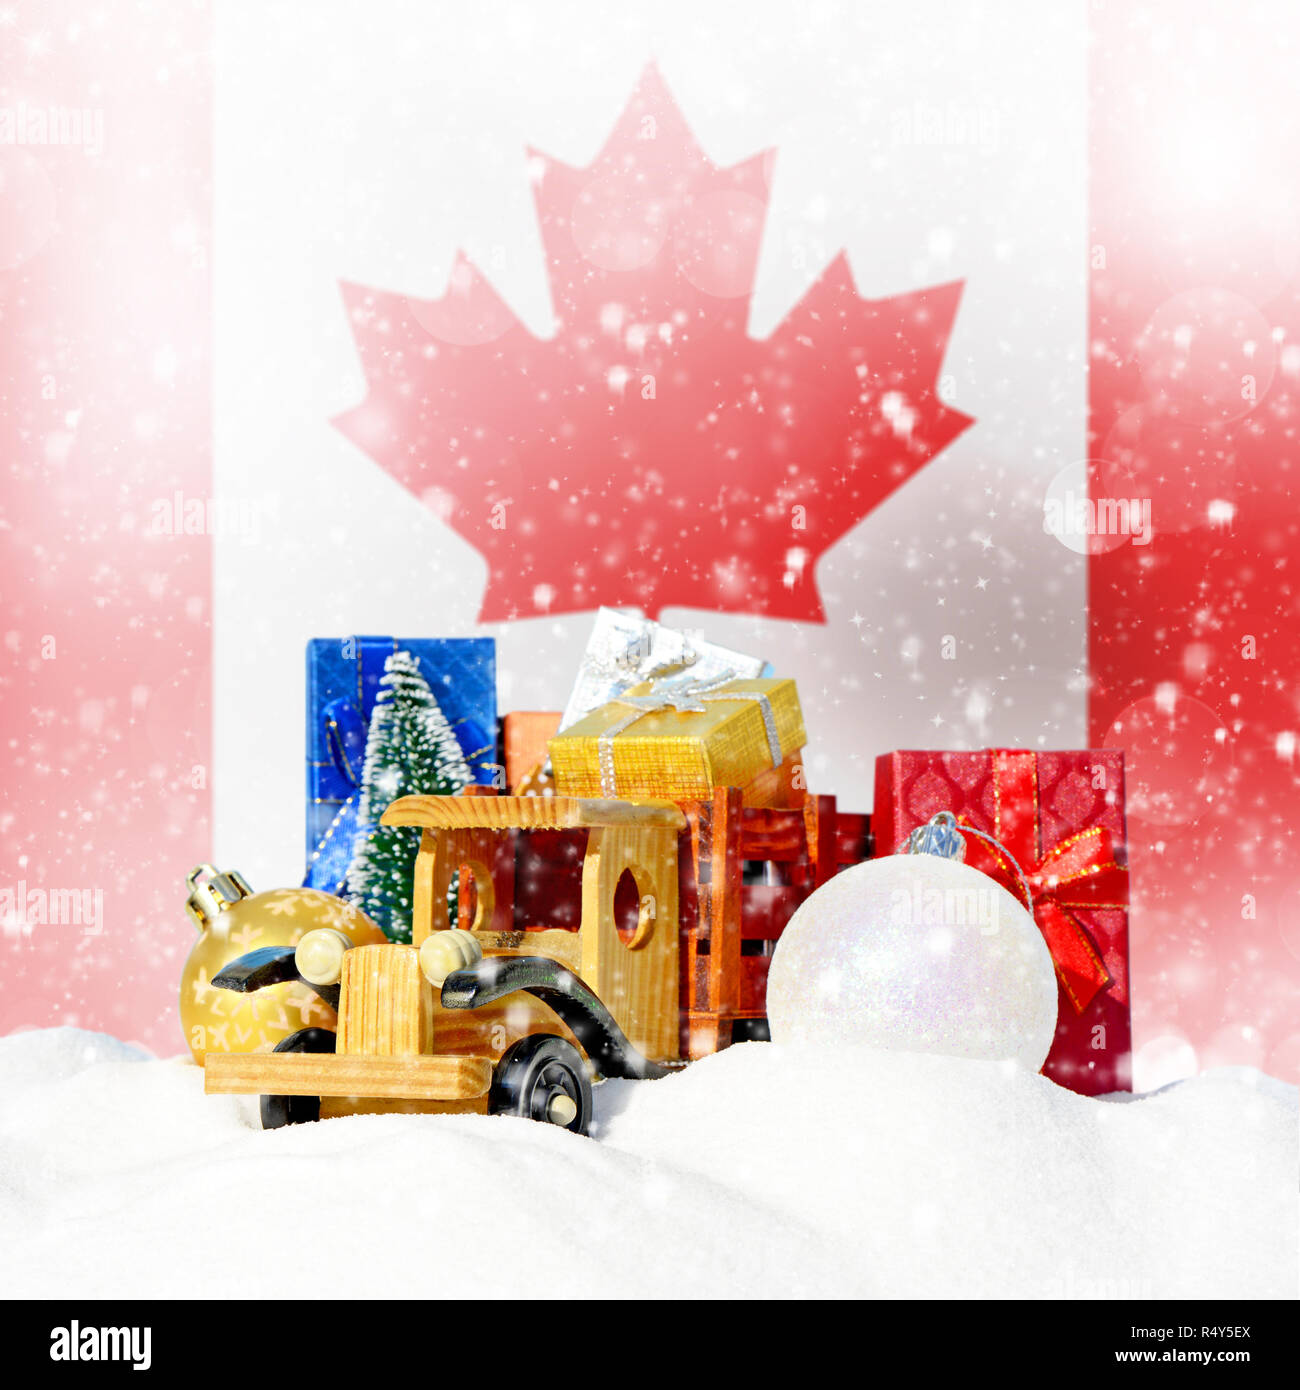 Weihnachten Hintergrund. Spielzeug-LKW mit Geschenken, Neues Jahr Tanne, Kugeln im Schneetreiben und Kanadischen Flagge Stockfoto